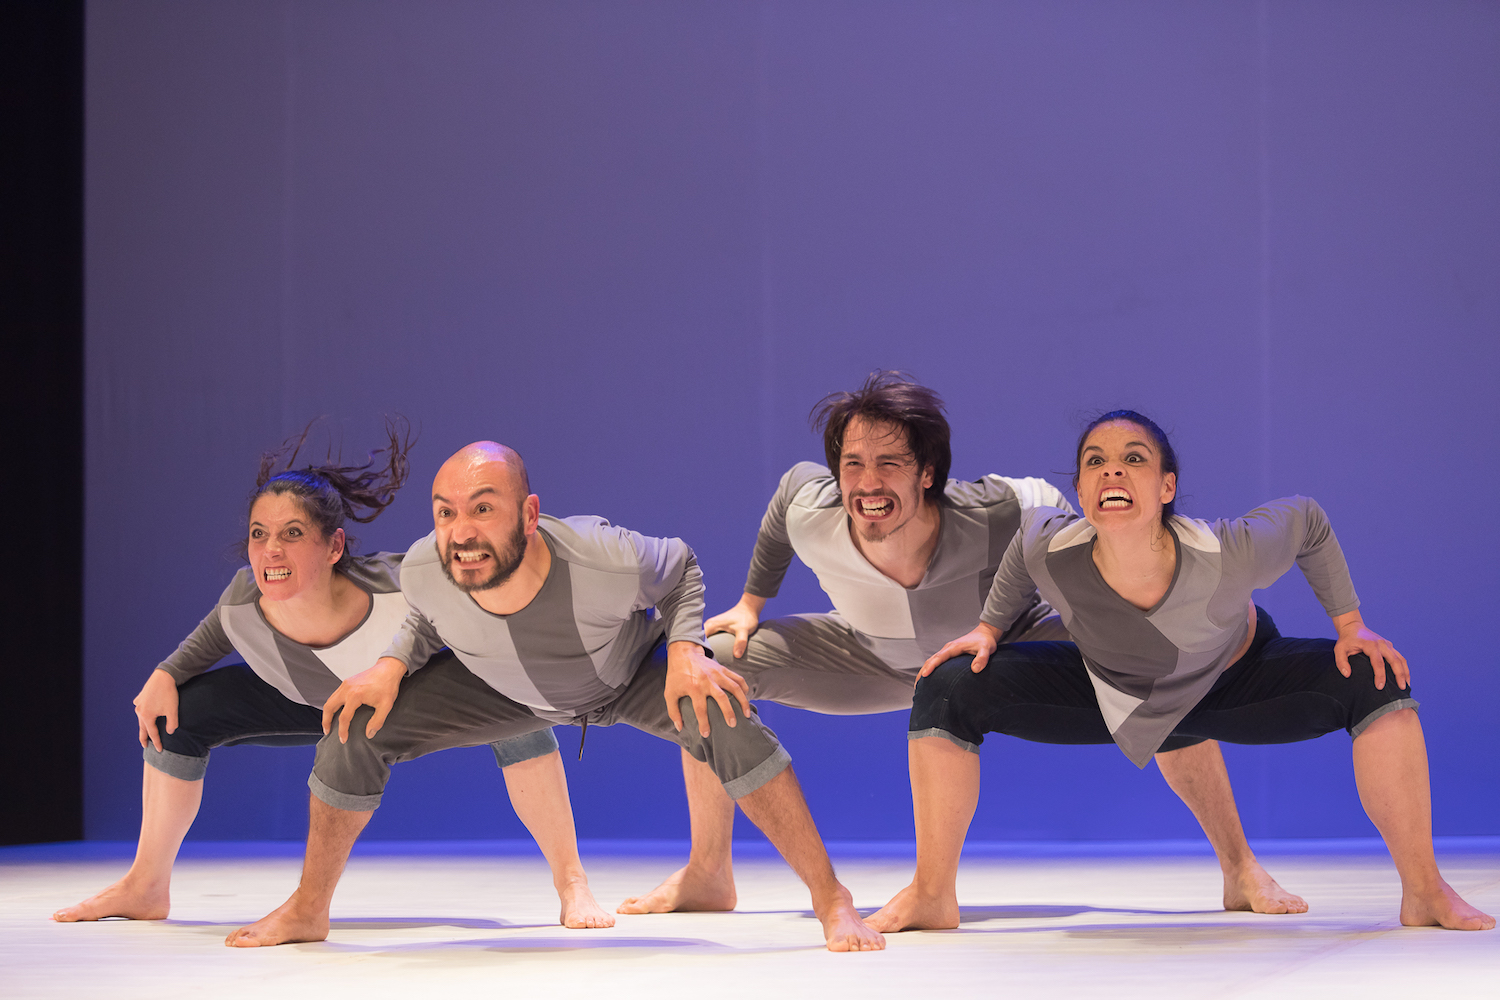 Reflexión y experimentación en danza marcan una nueva temporada de Escénica en Movimiento en Teatro Biobío